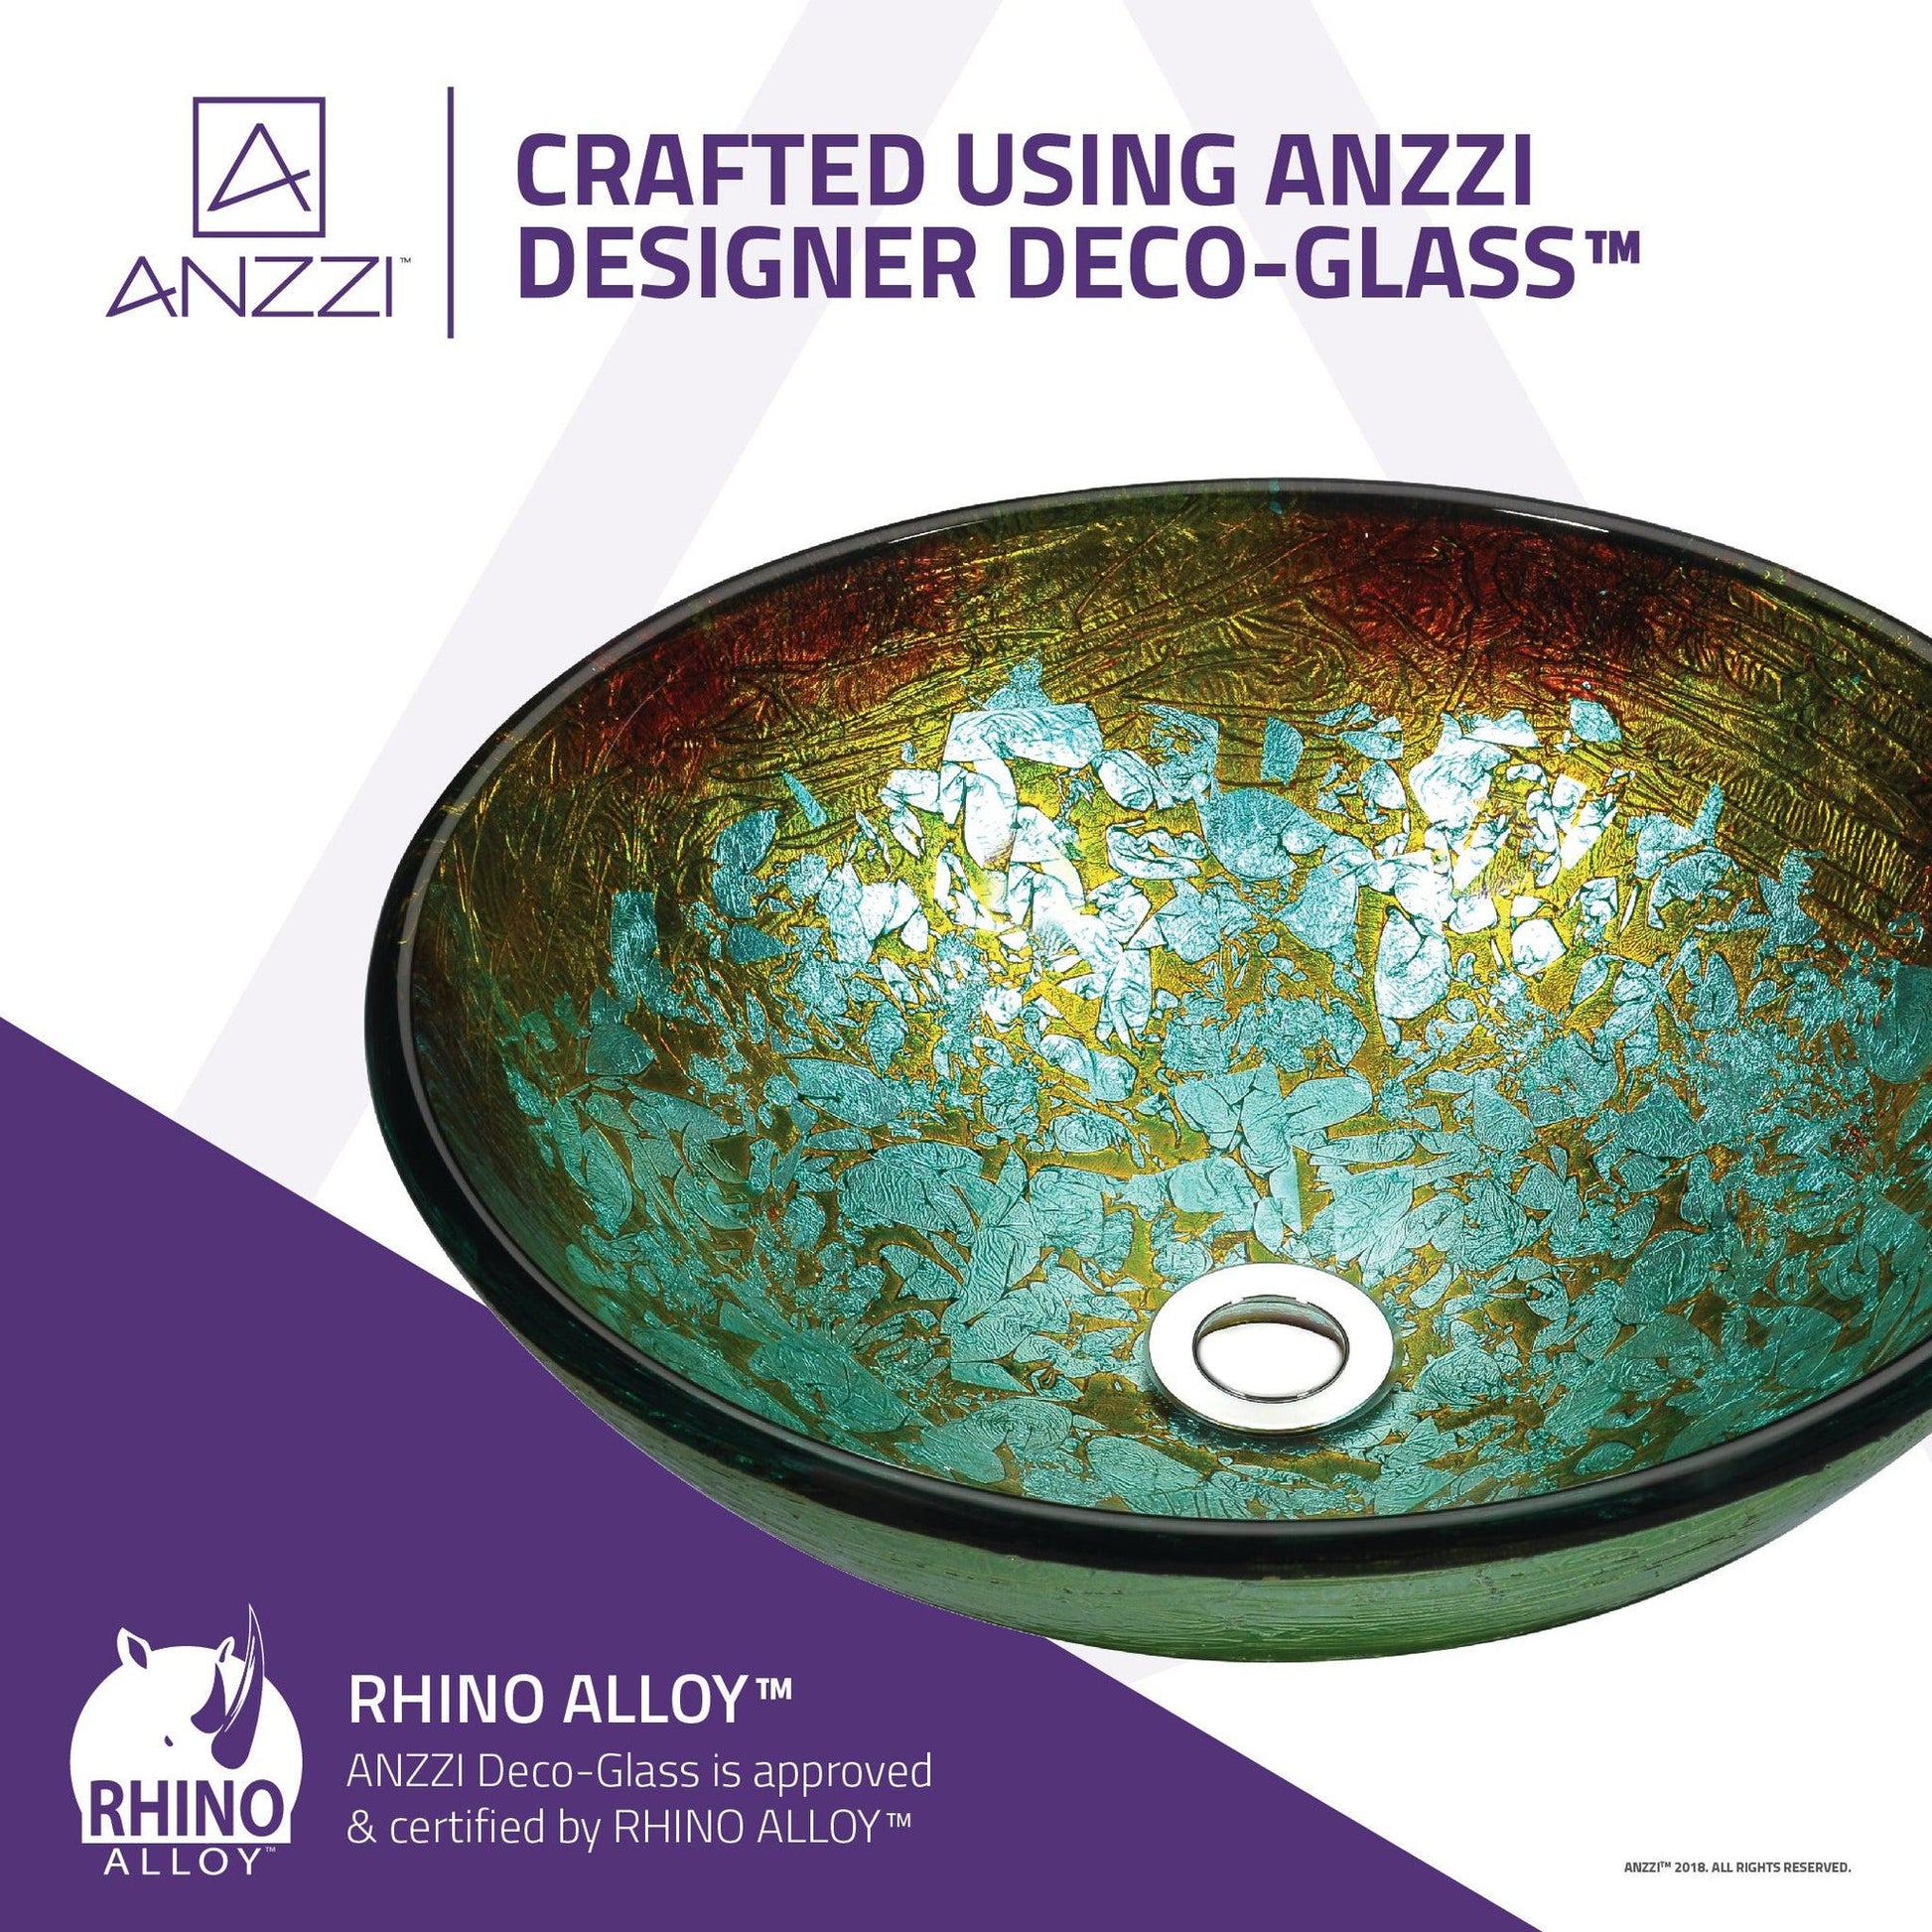 ANZZI Stellar Series 17" x 17" Round Glacial Blaze Deco-Glass Vessel Sink With Polished Chrome Pop-Up Drain